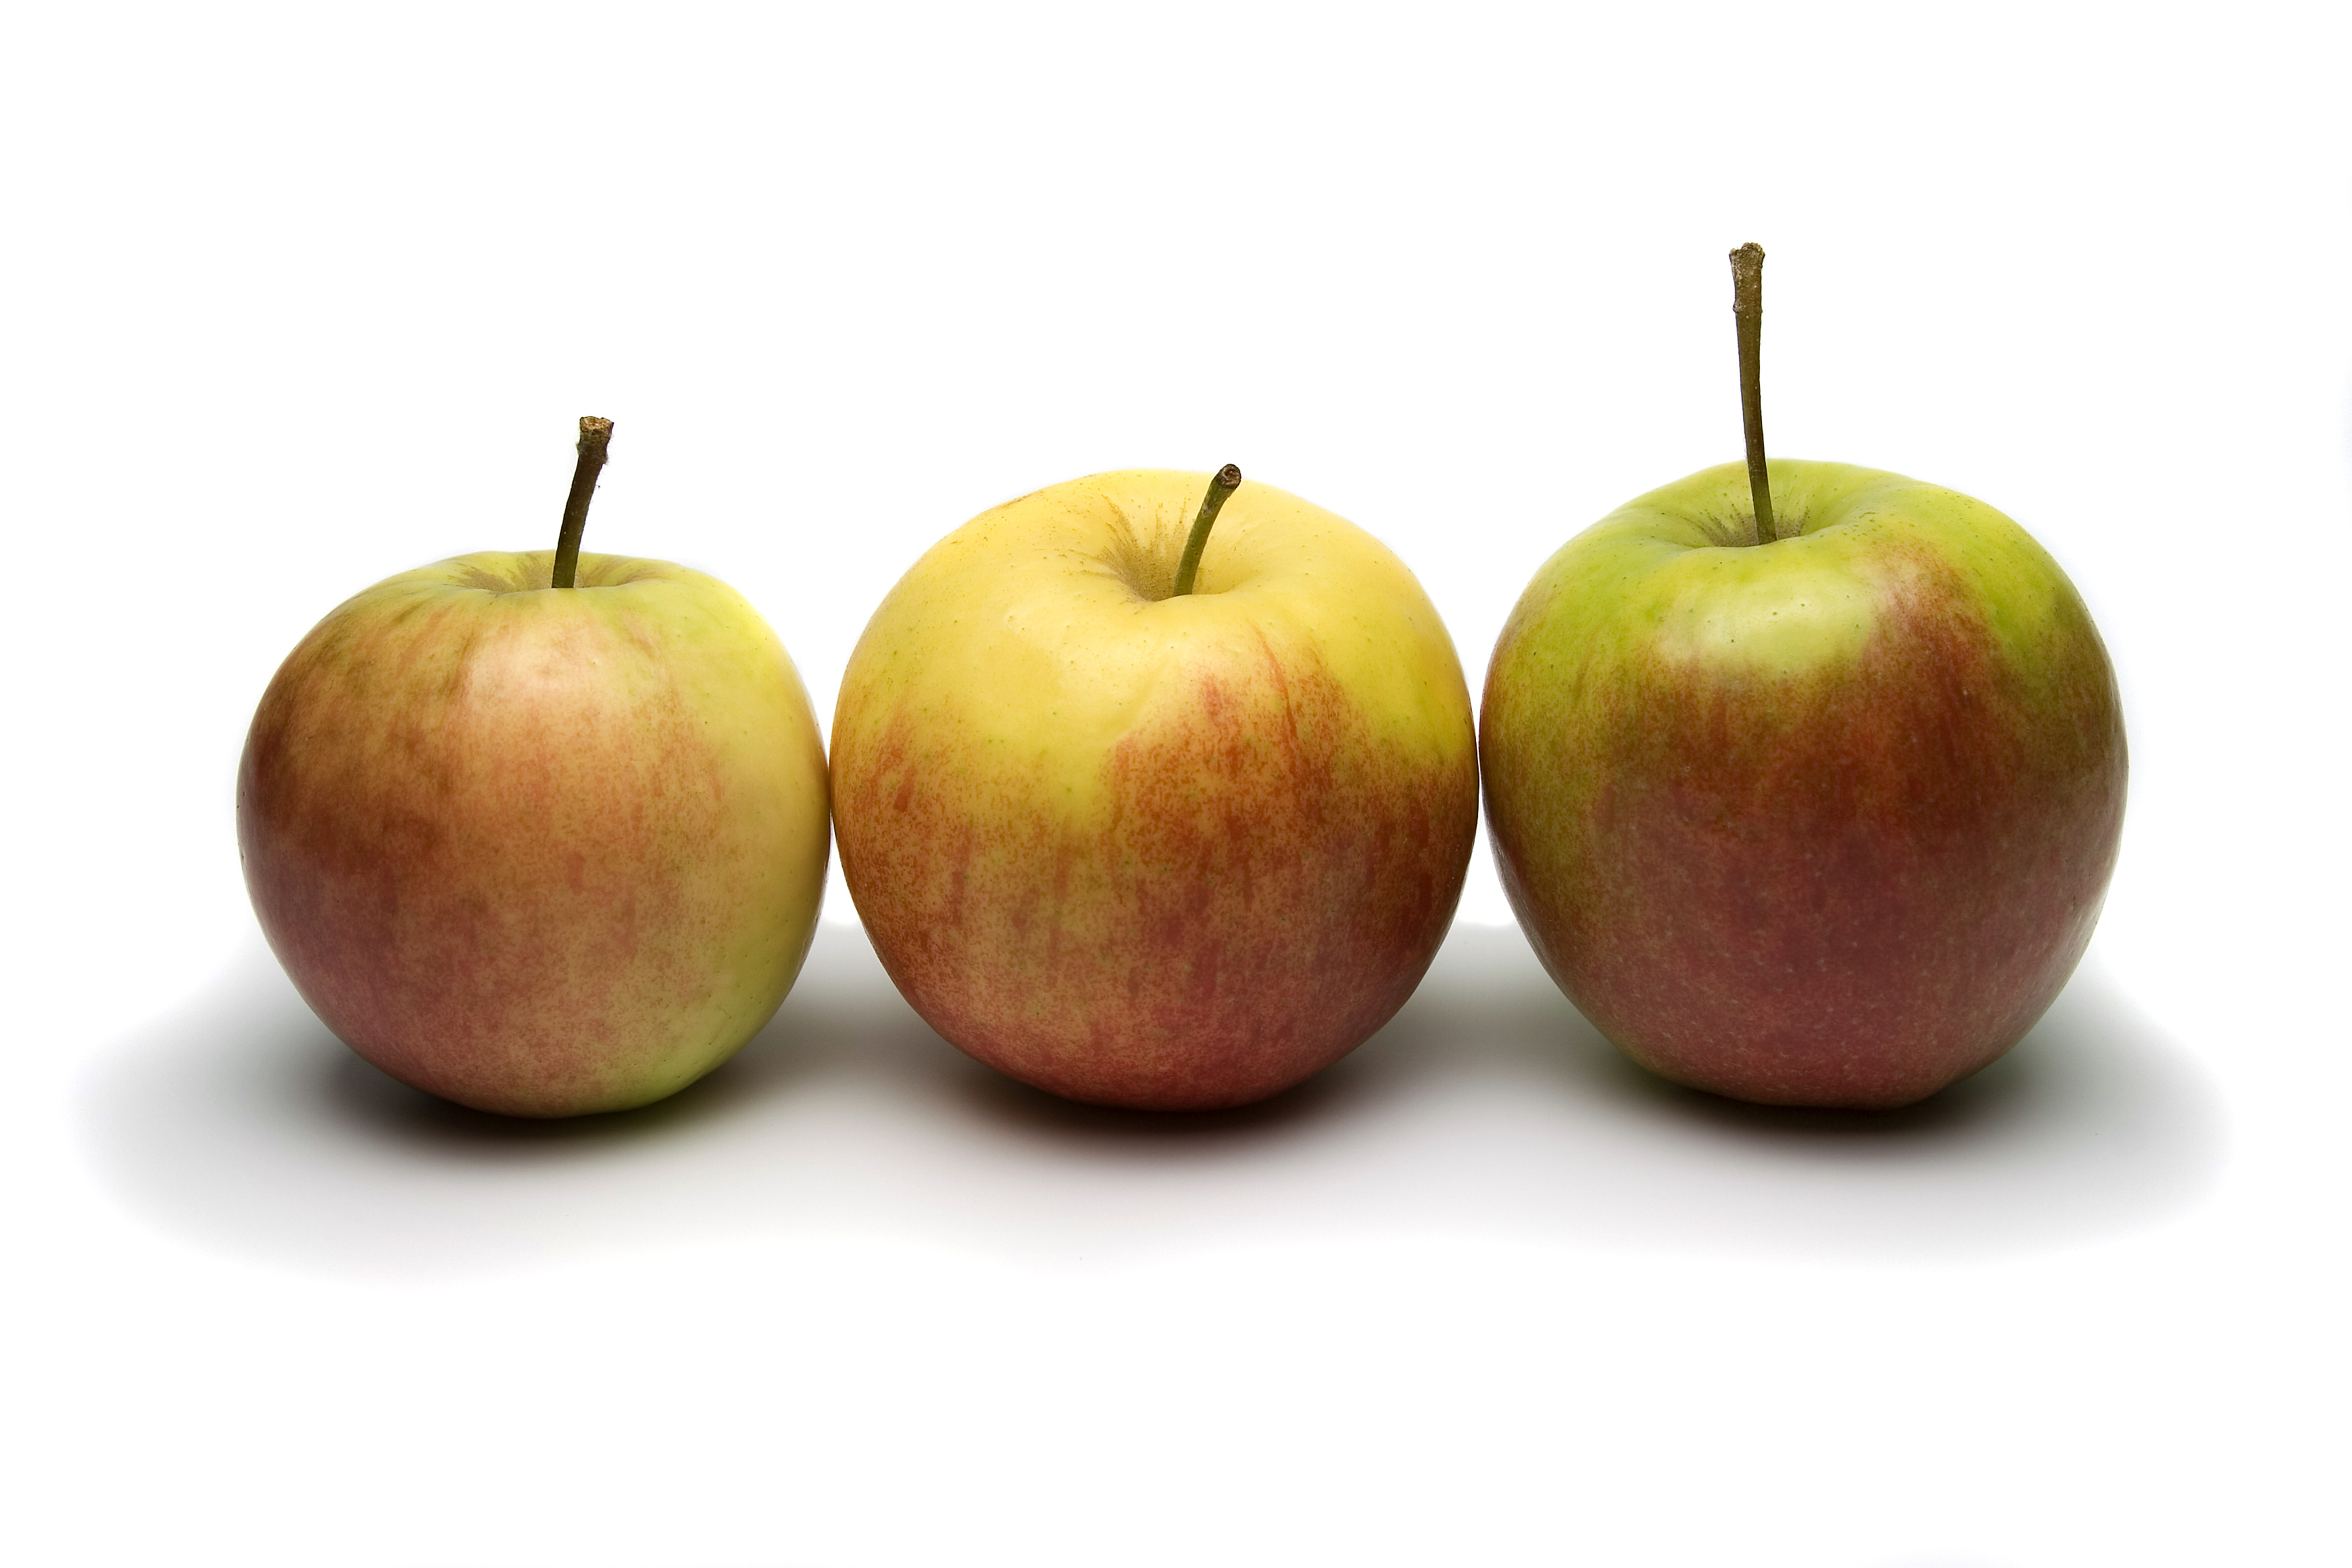 Включи 3 яблока. Яблоки разного цвета. Три яблока. Три похожих яблока. Три яблока разных размеров.